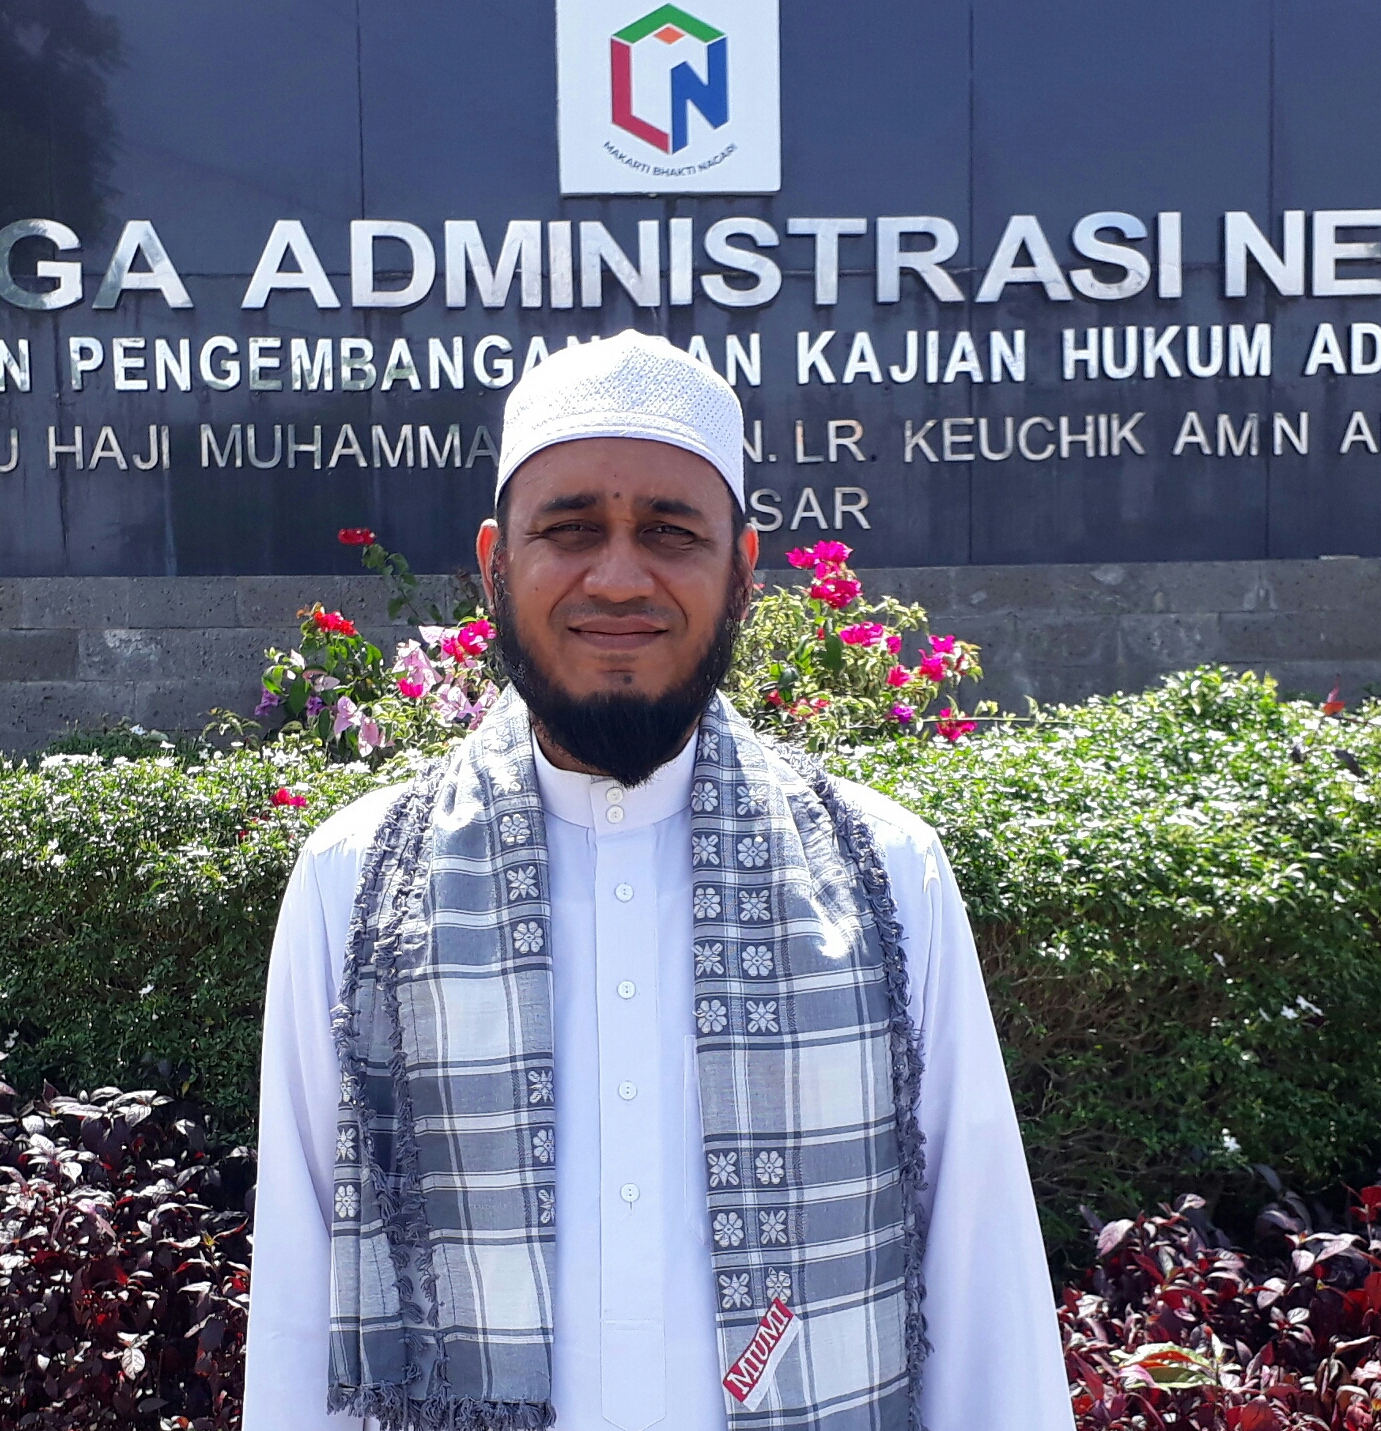 Ketua MIUMI Aceh: Tidak Pantas Seorang Muslim Mengucapkan Selamat Natal dan Tahun Baru